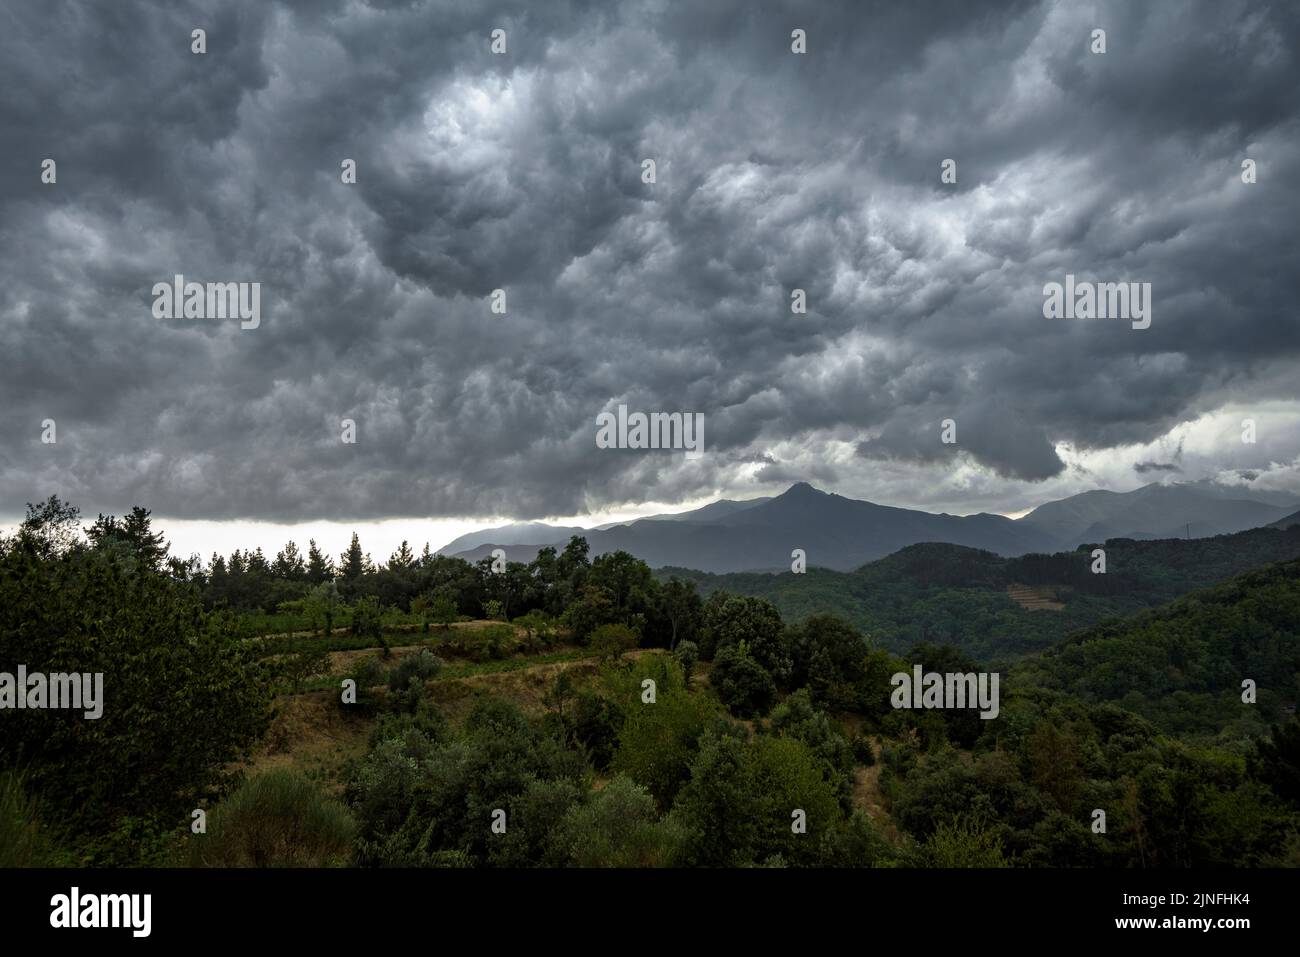 Nuages orageux au-dessus de la montagne Montseny, vue de Sant Hilari Sacalm (la Selva, Gérone, Catalogne, Espagne) ESP: Nubes de tormenta sobre la monta Banque D'Images